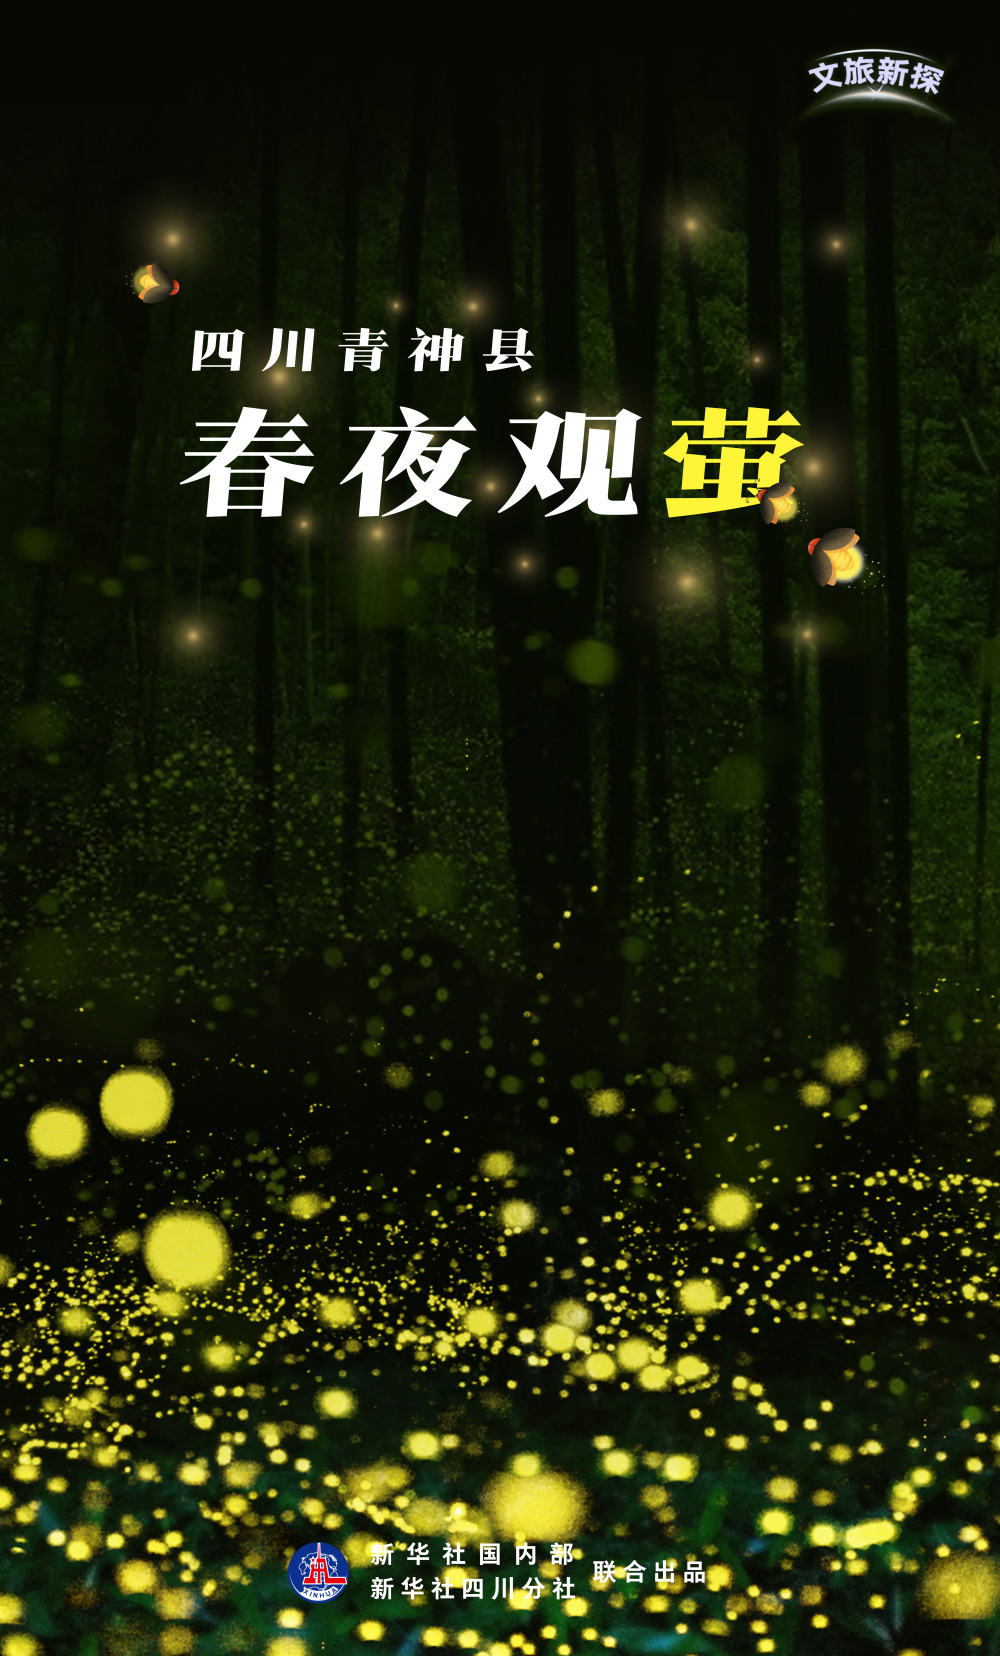 天色渐暗,四川青神县观赏萤火虫的核心区天池村兰厂沟迎来了赏萤最佳